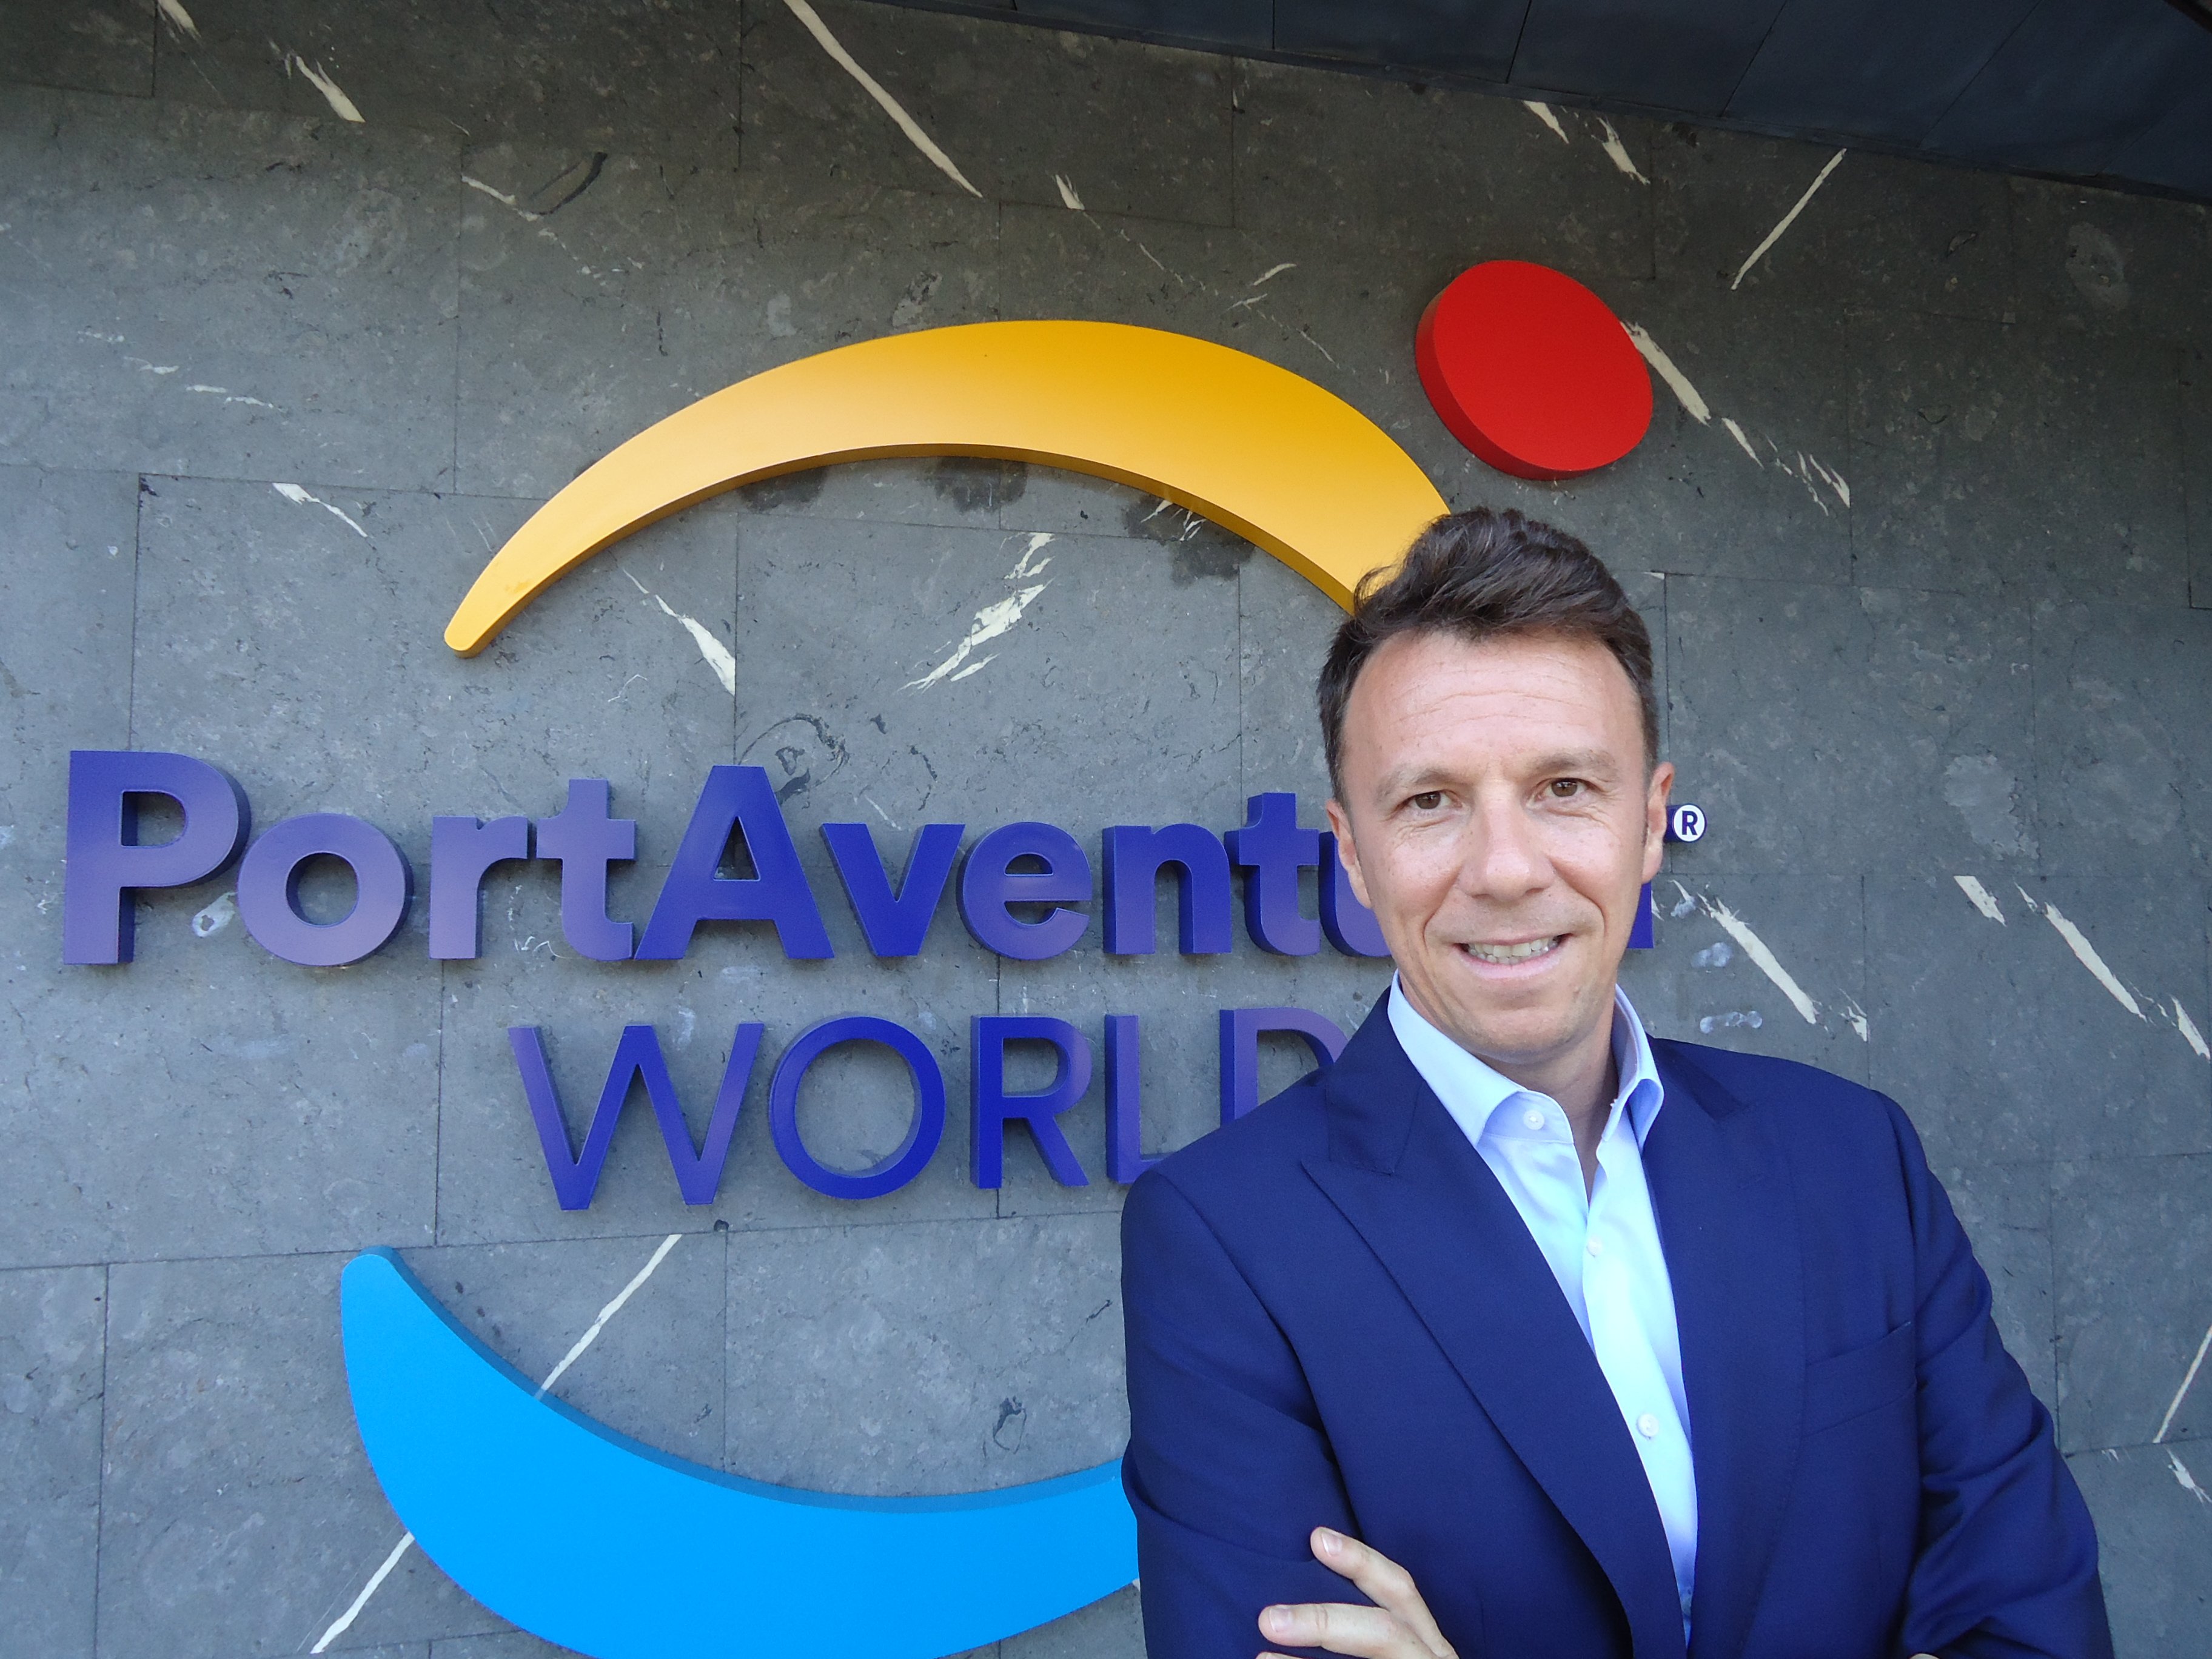 PortAventura World incorpora David García al seu Consell d'Administració